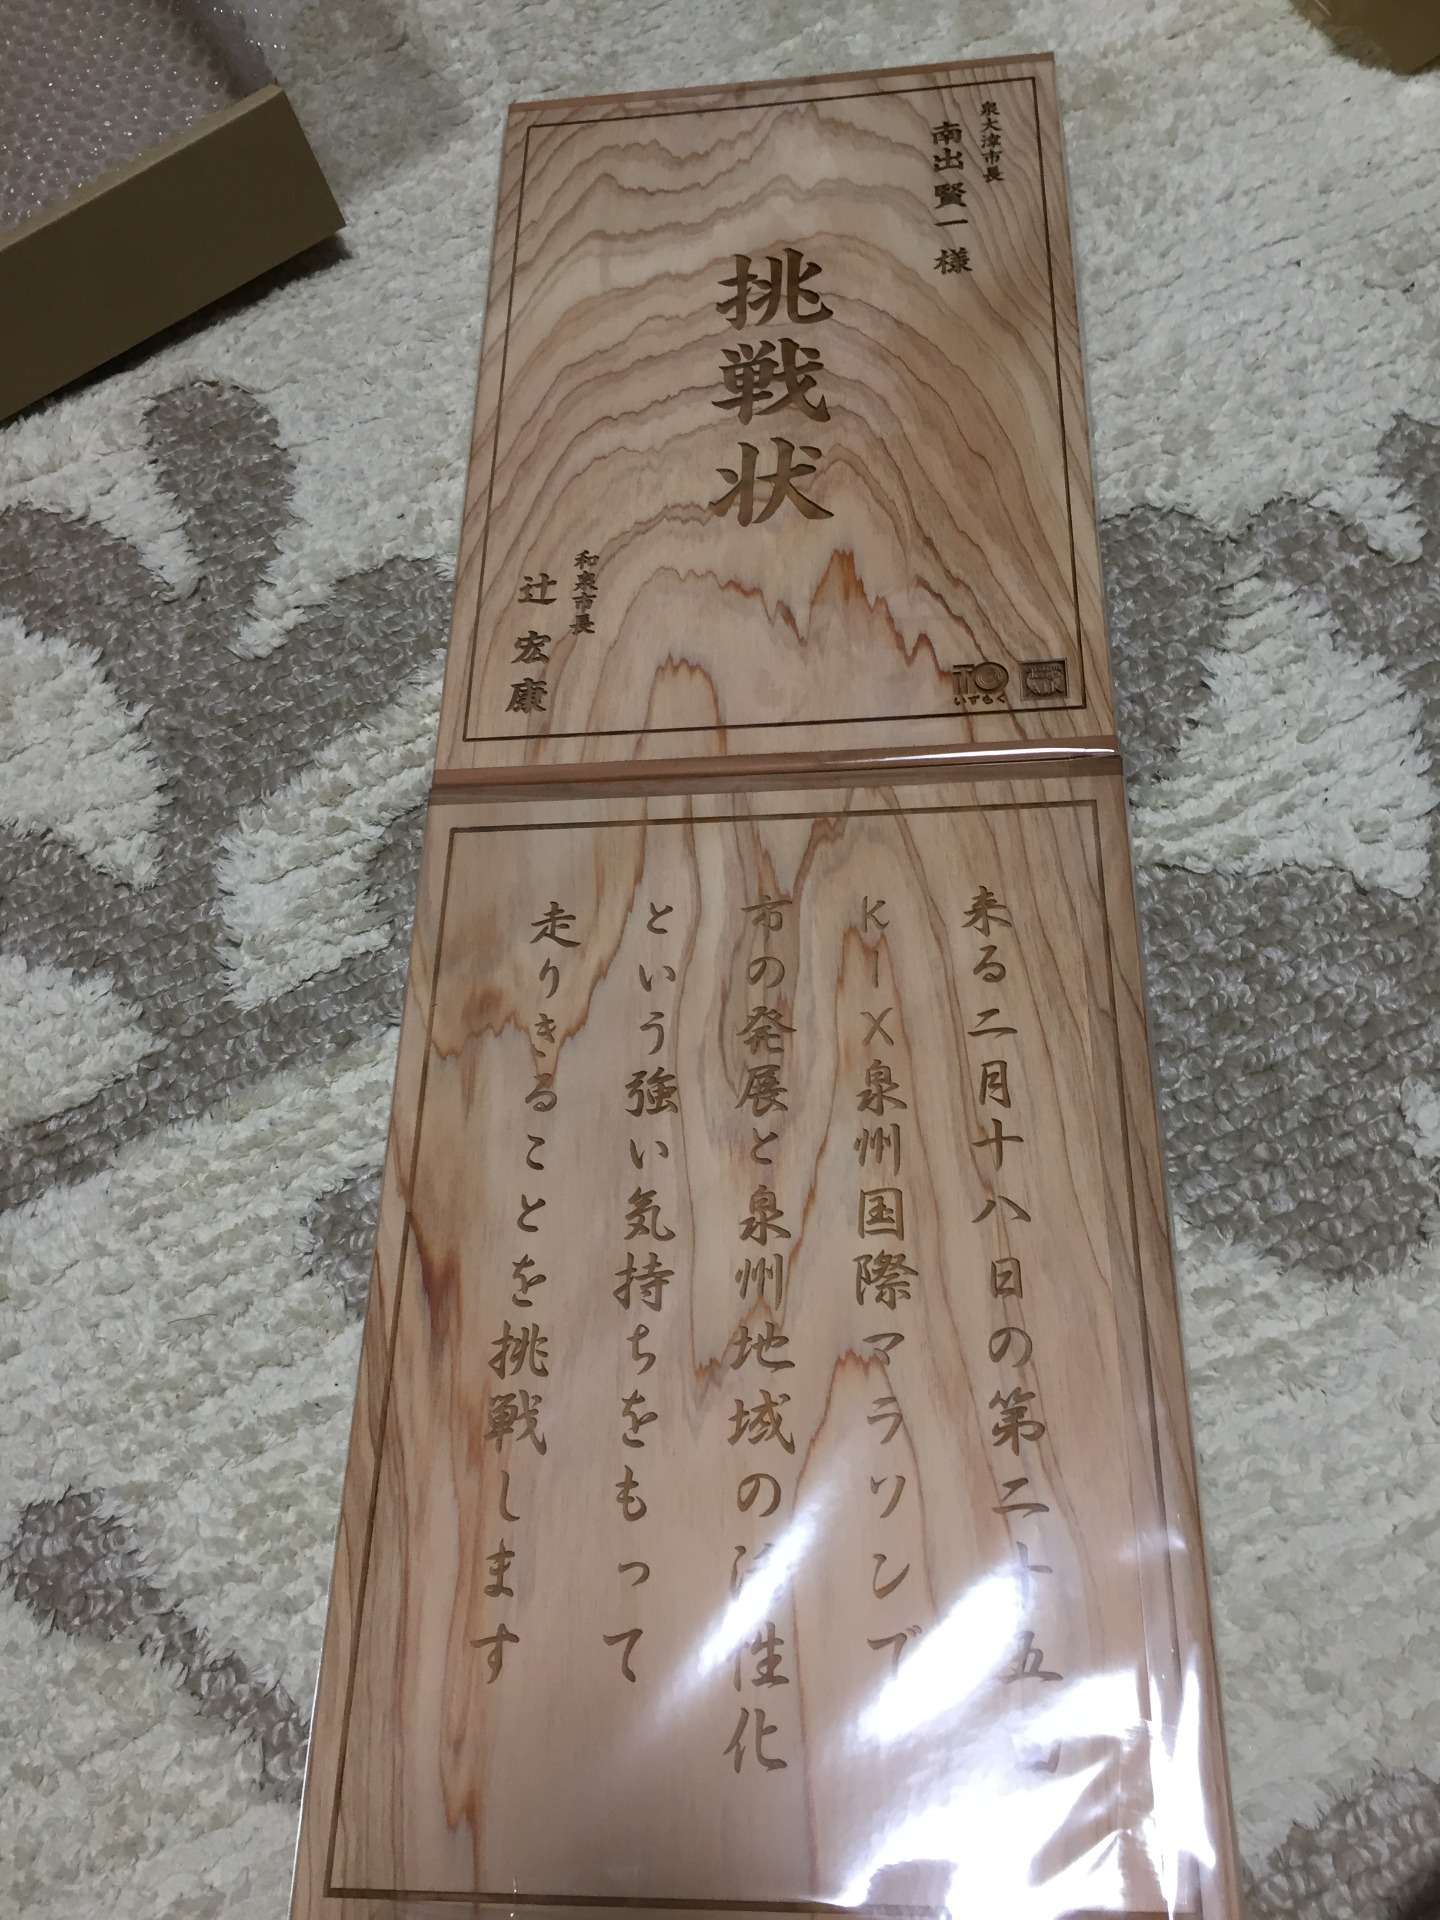 和泉市市長からの「挑戦状」の木製プレートを製作しました。